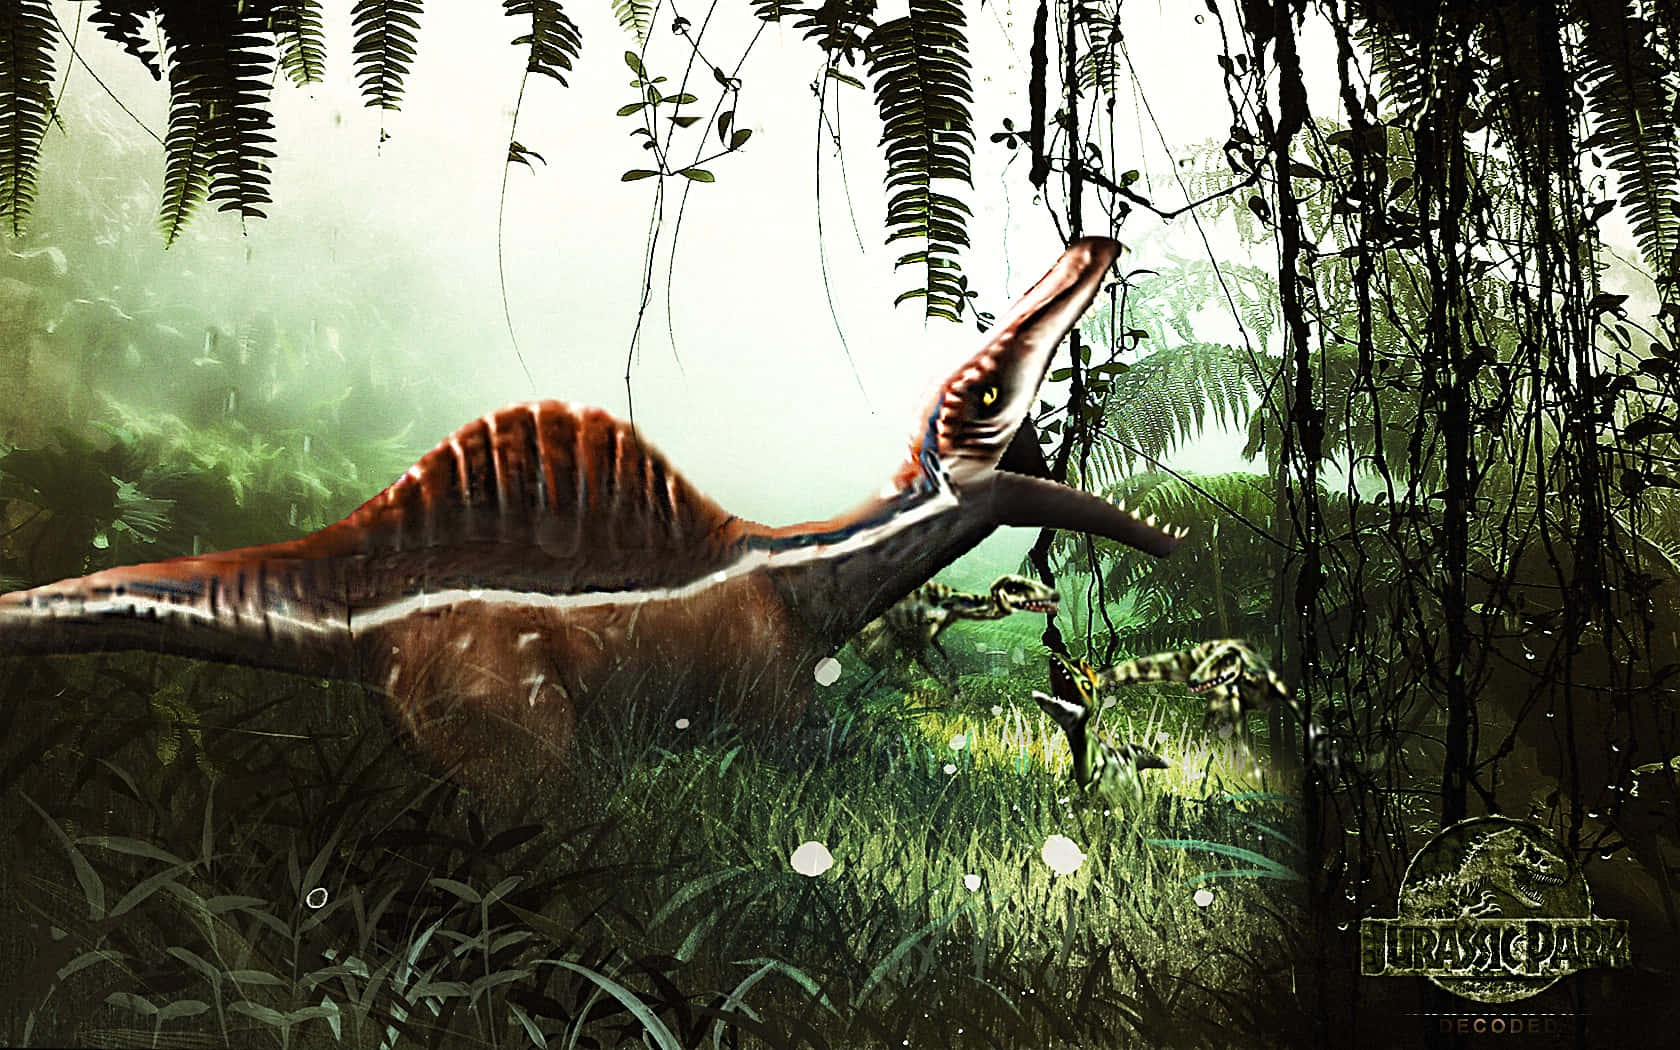 Unprimer Plano De Un Spinosaurus, Un Dinosaurio Del Periodo Cretácico. Fondo de pantalla